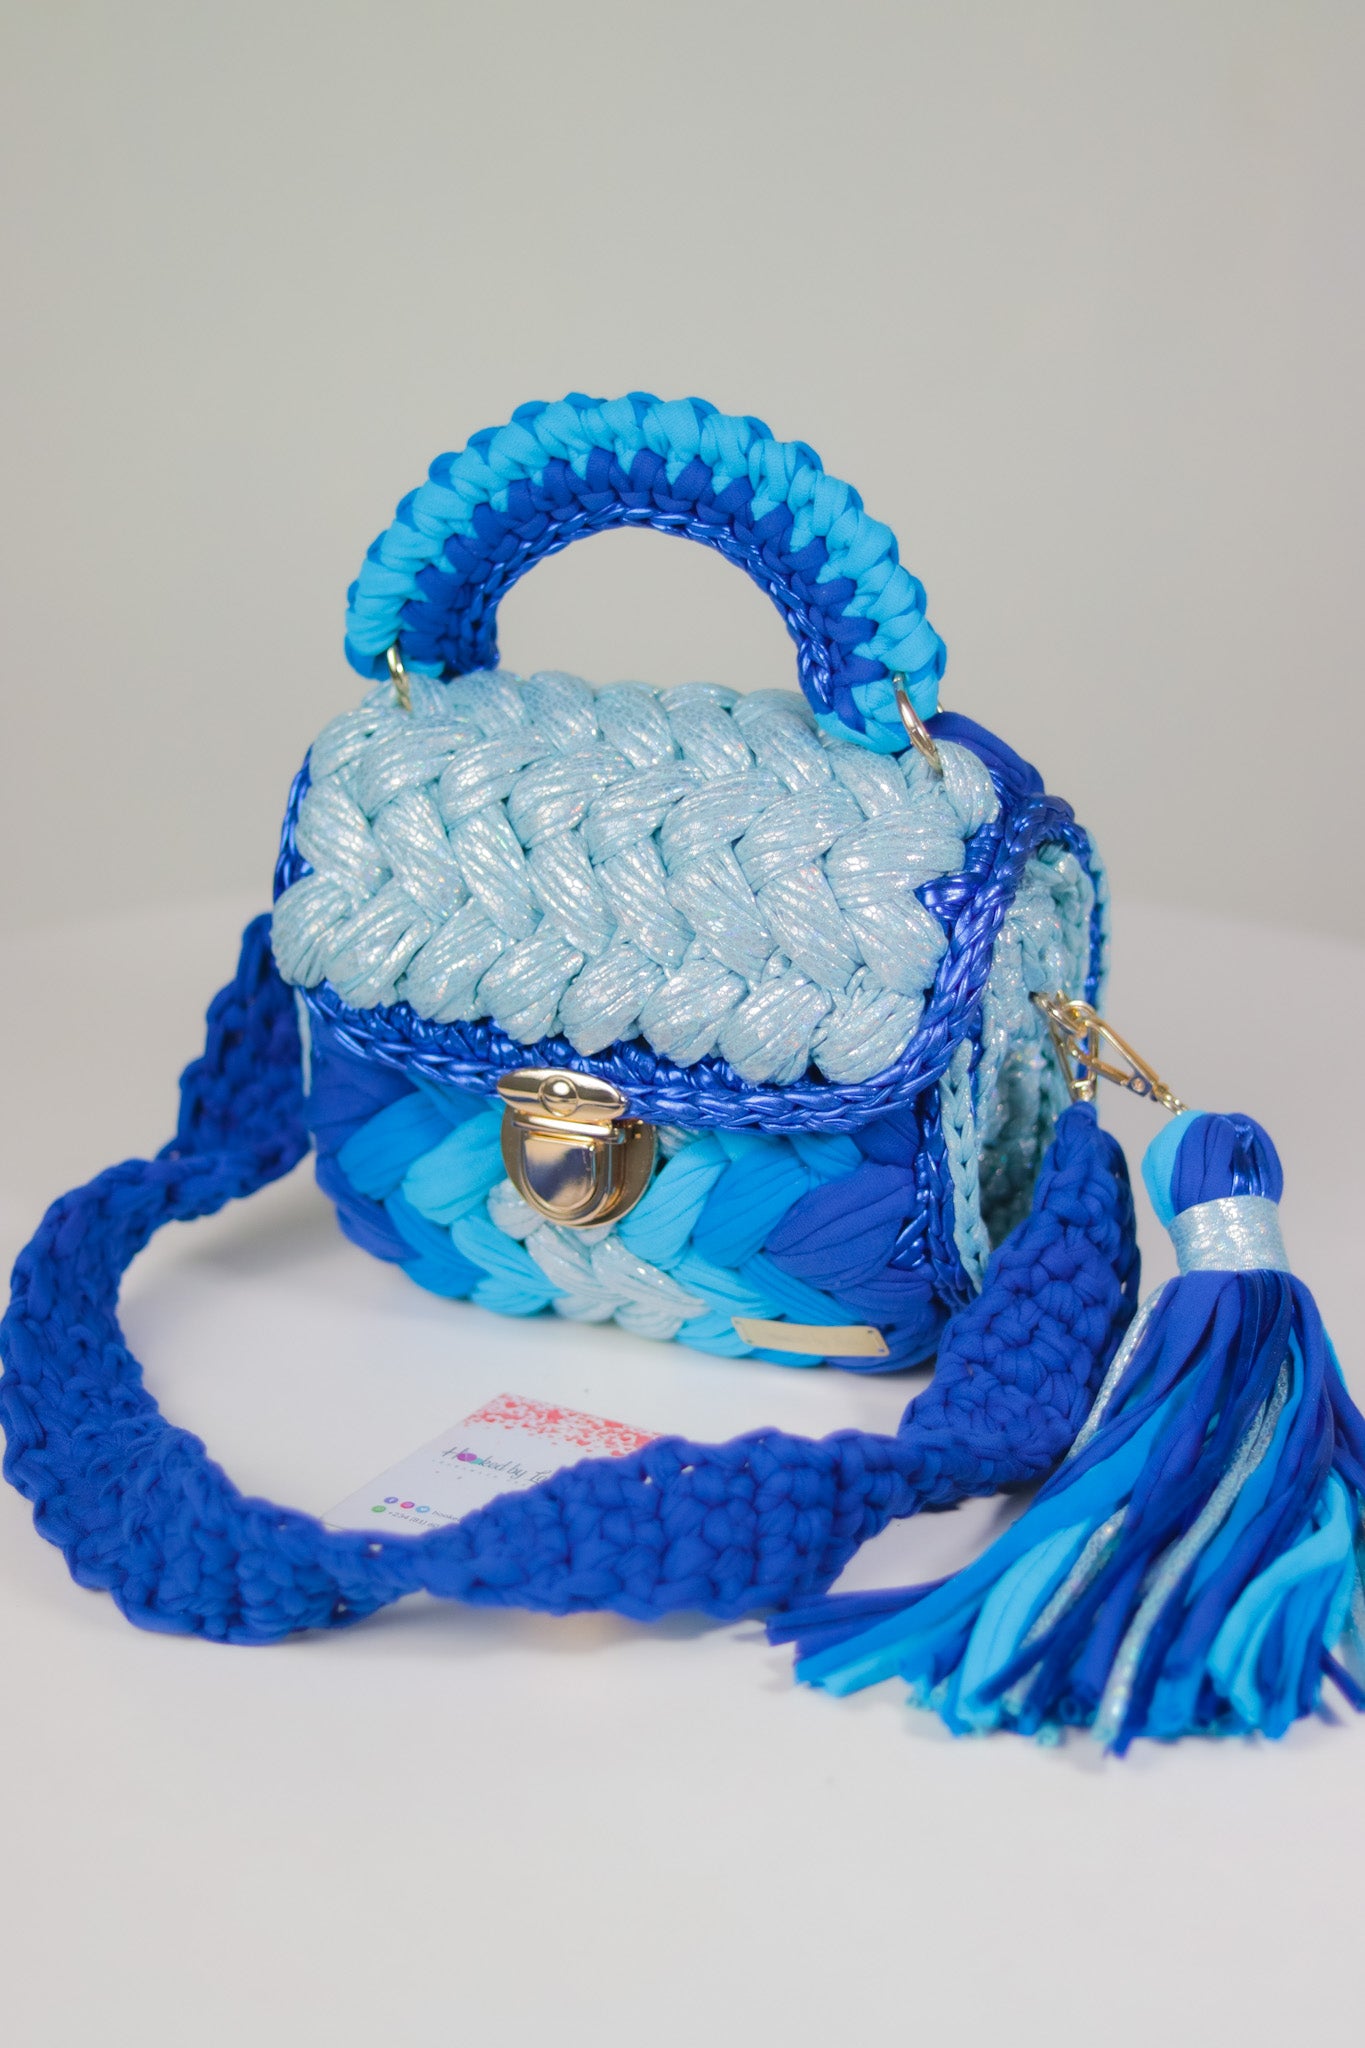 Buy Gold Handmade Crochet Bag Online in India - Etsy